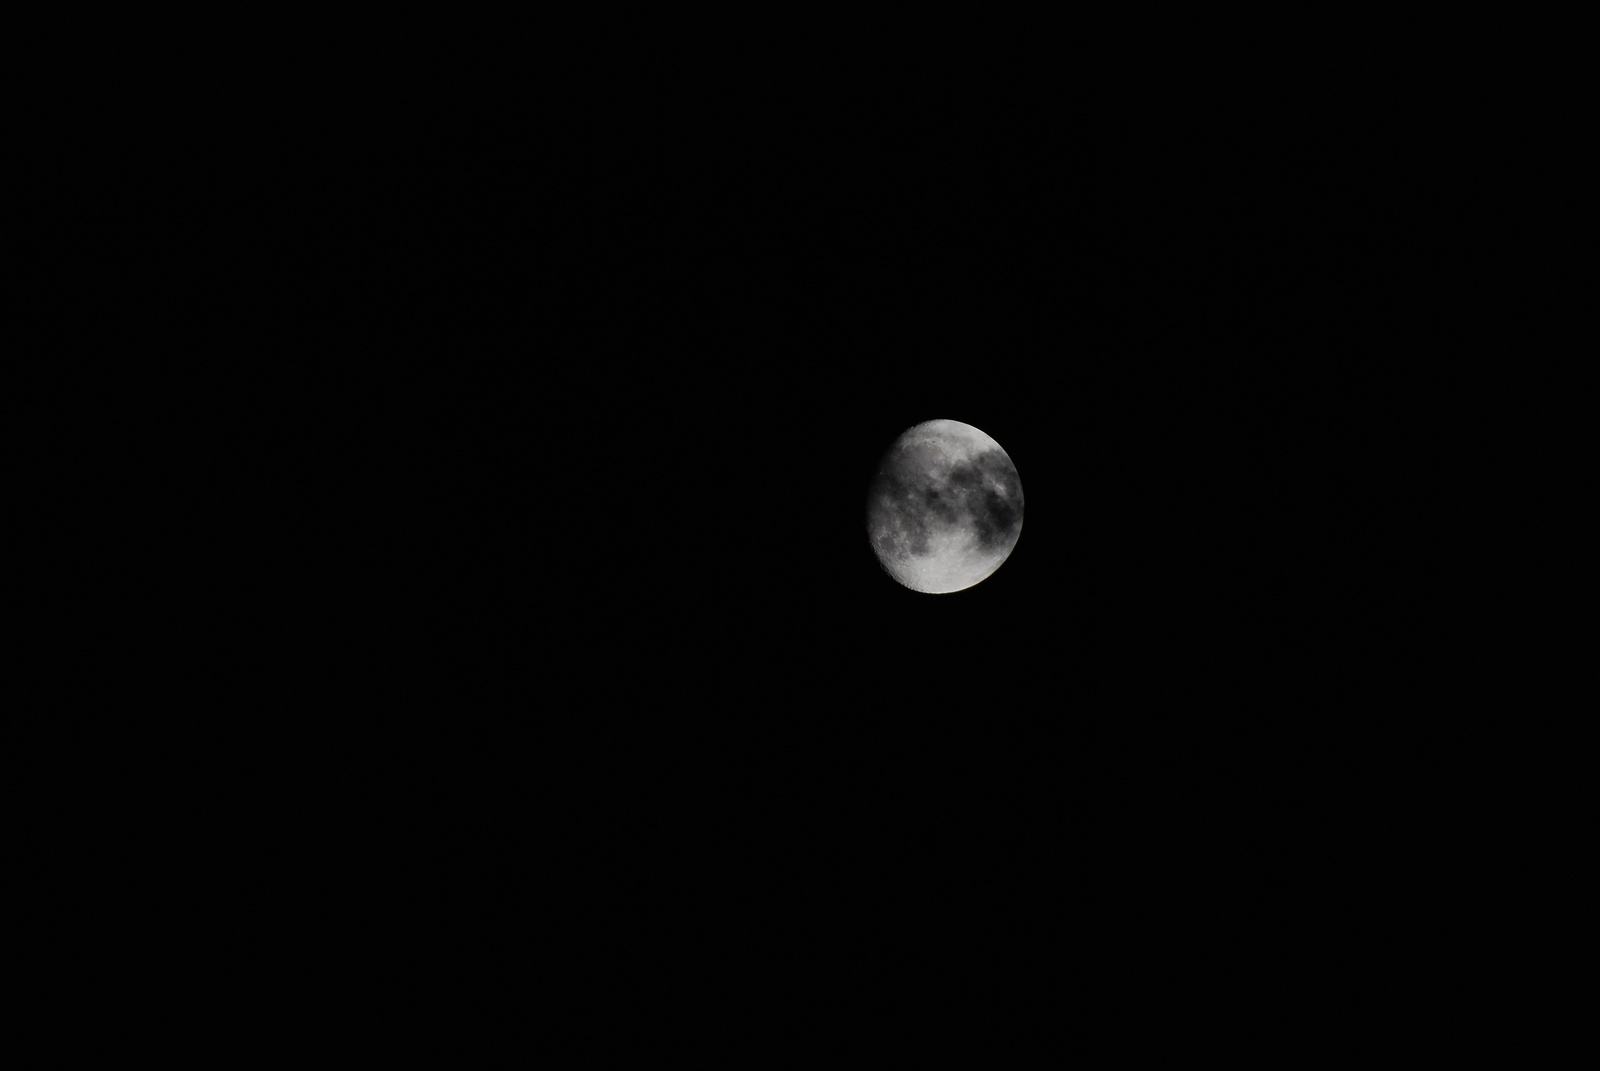 DSC 9542 Felhő a Hold előtt